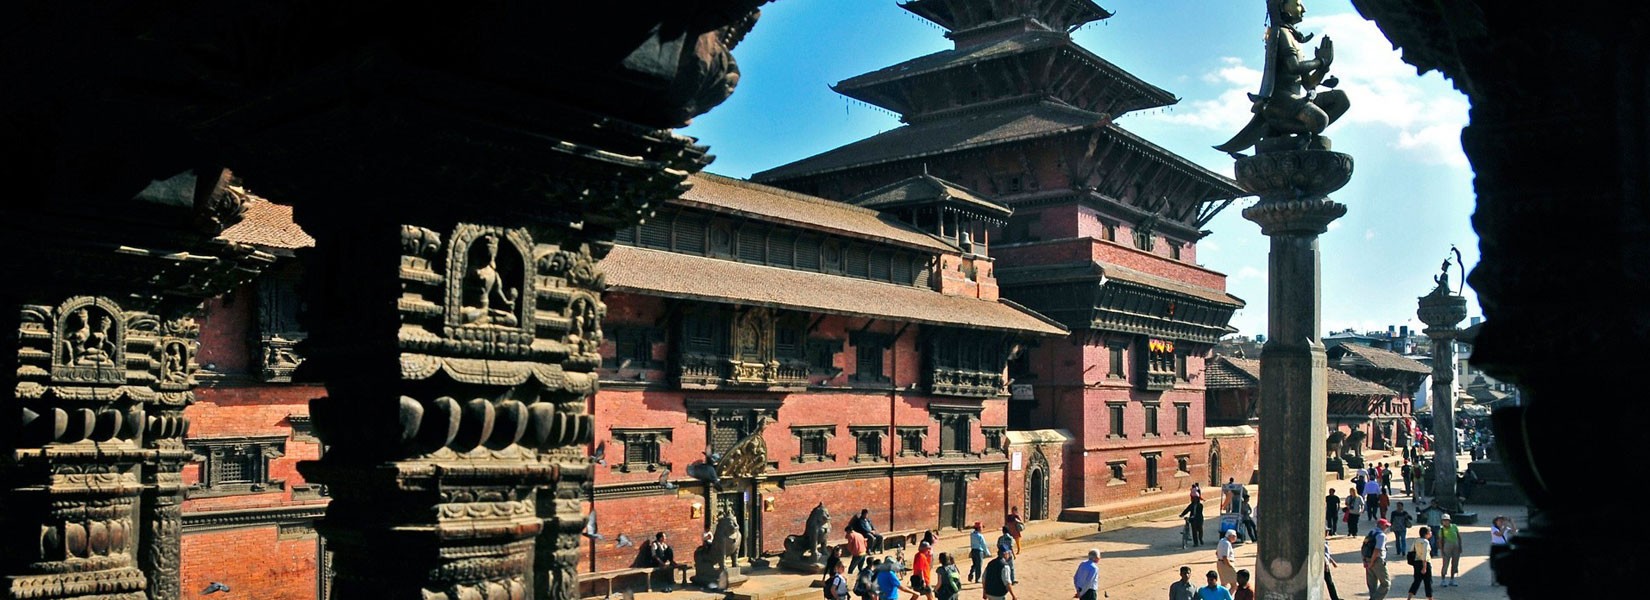 Patan Durbar Square at city of Lalitpur in Nepal